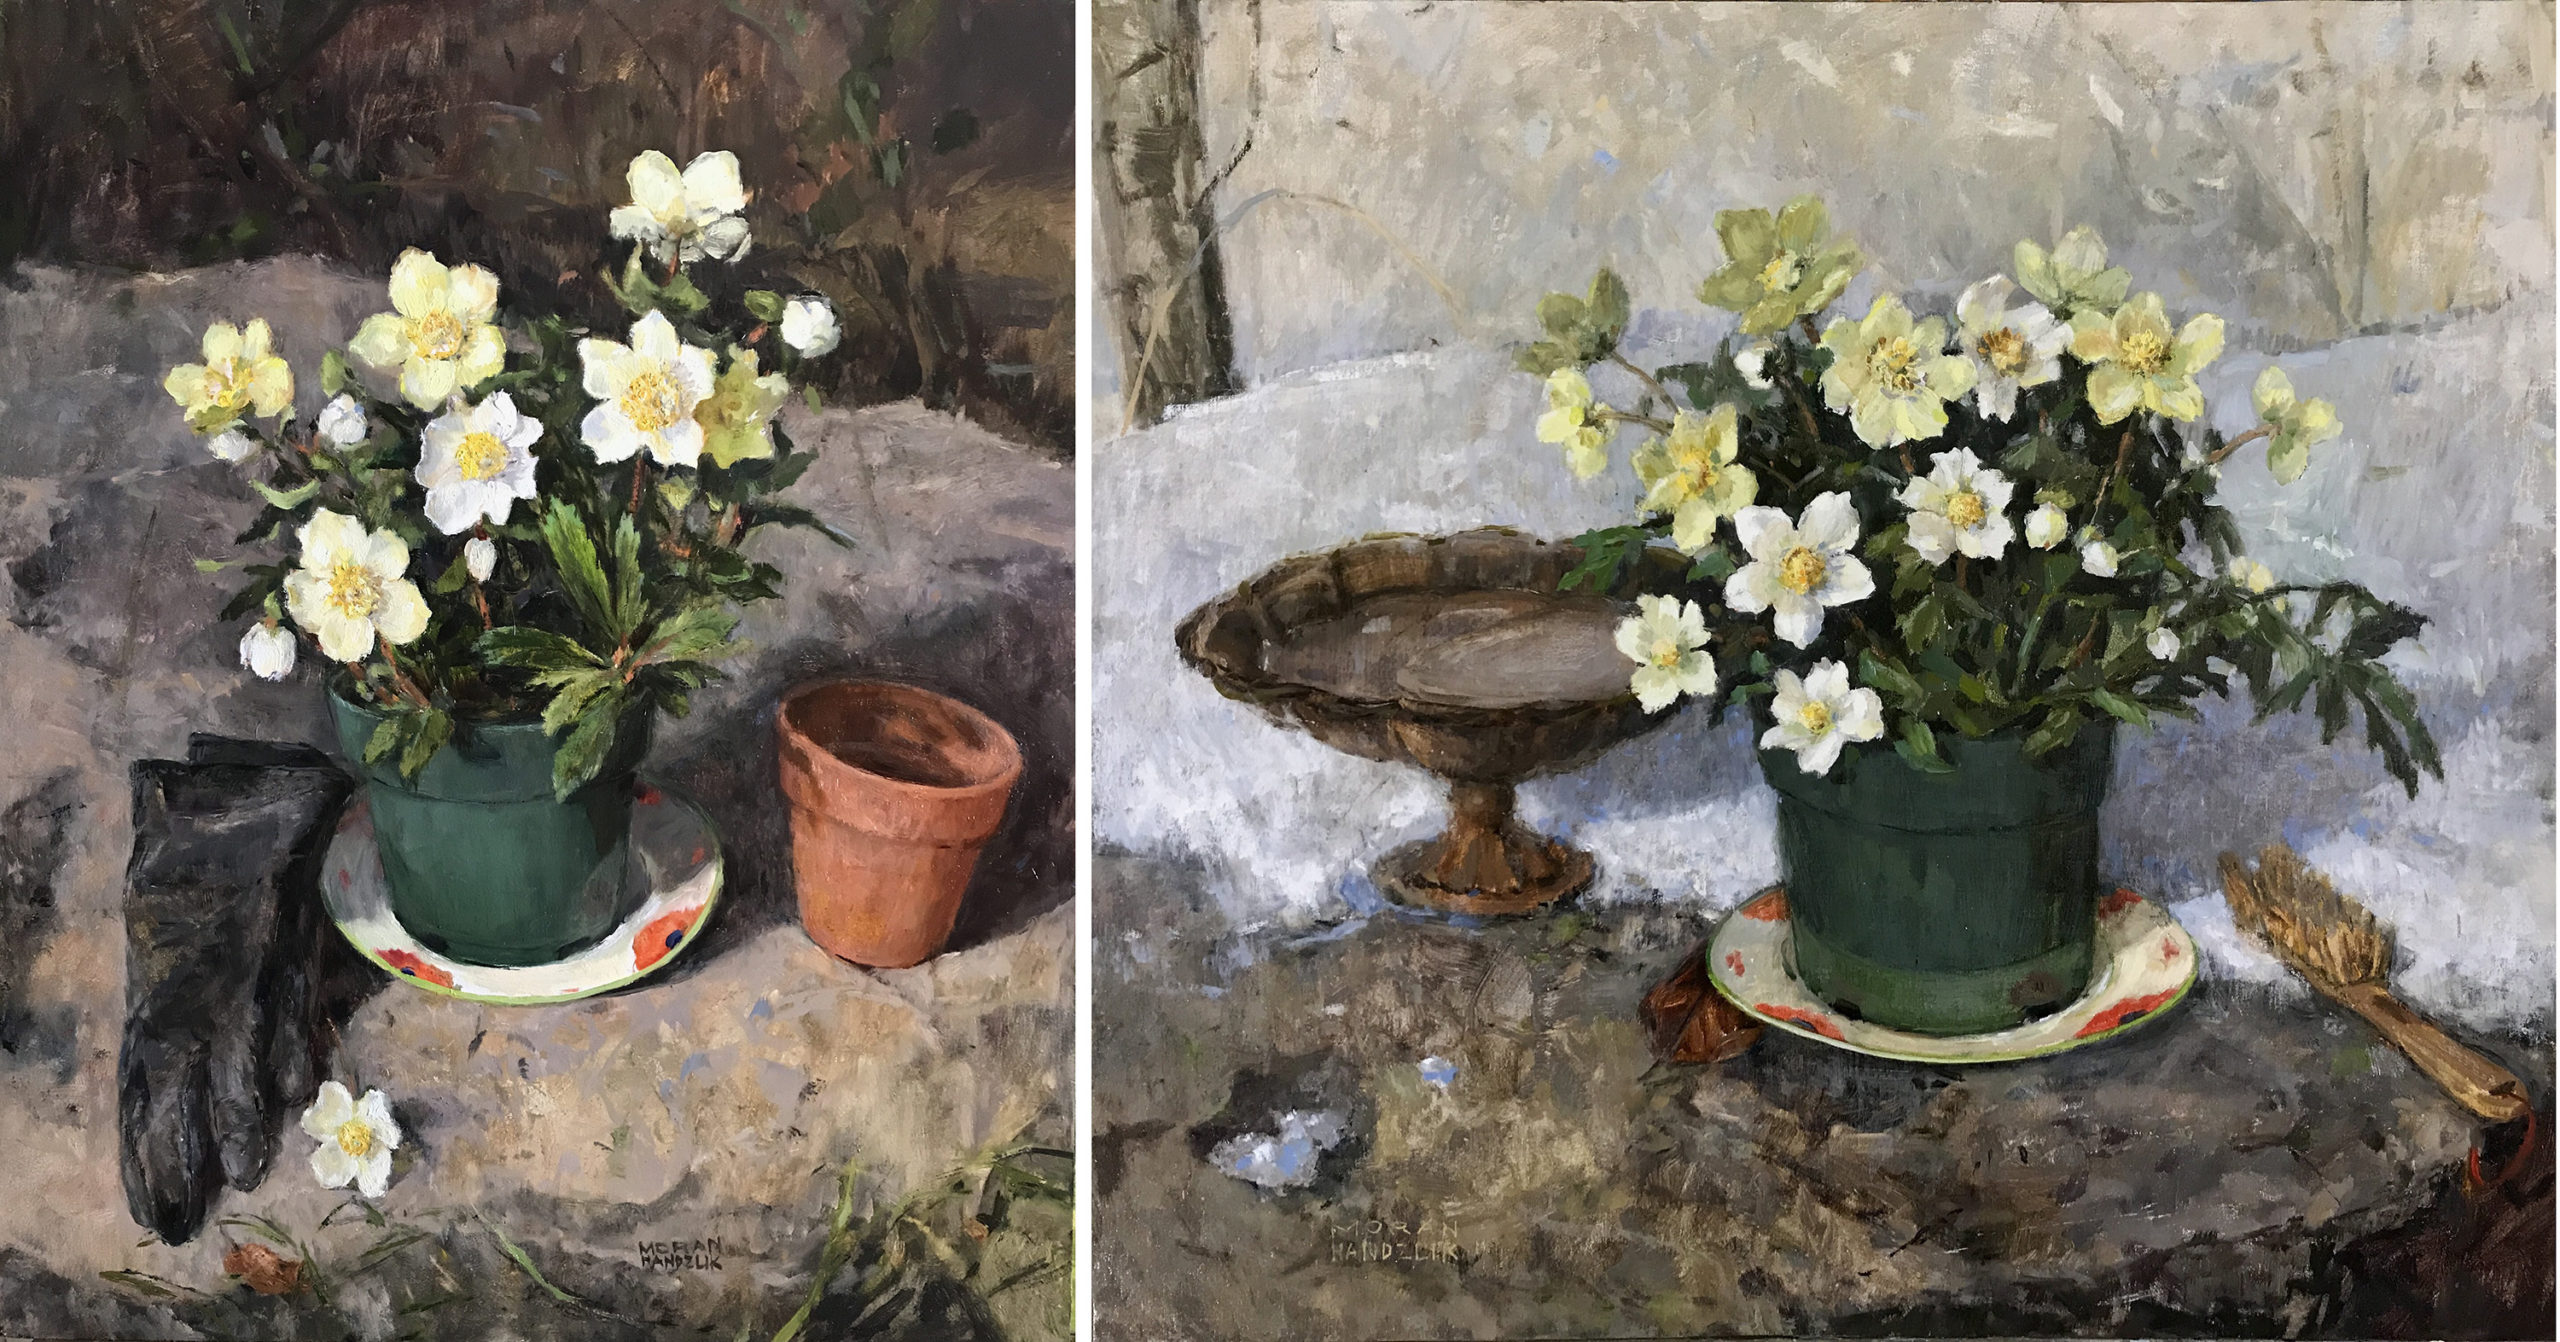 Paintings of flowers